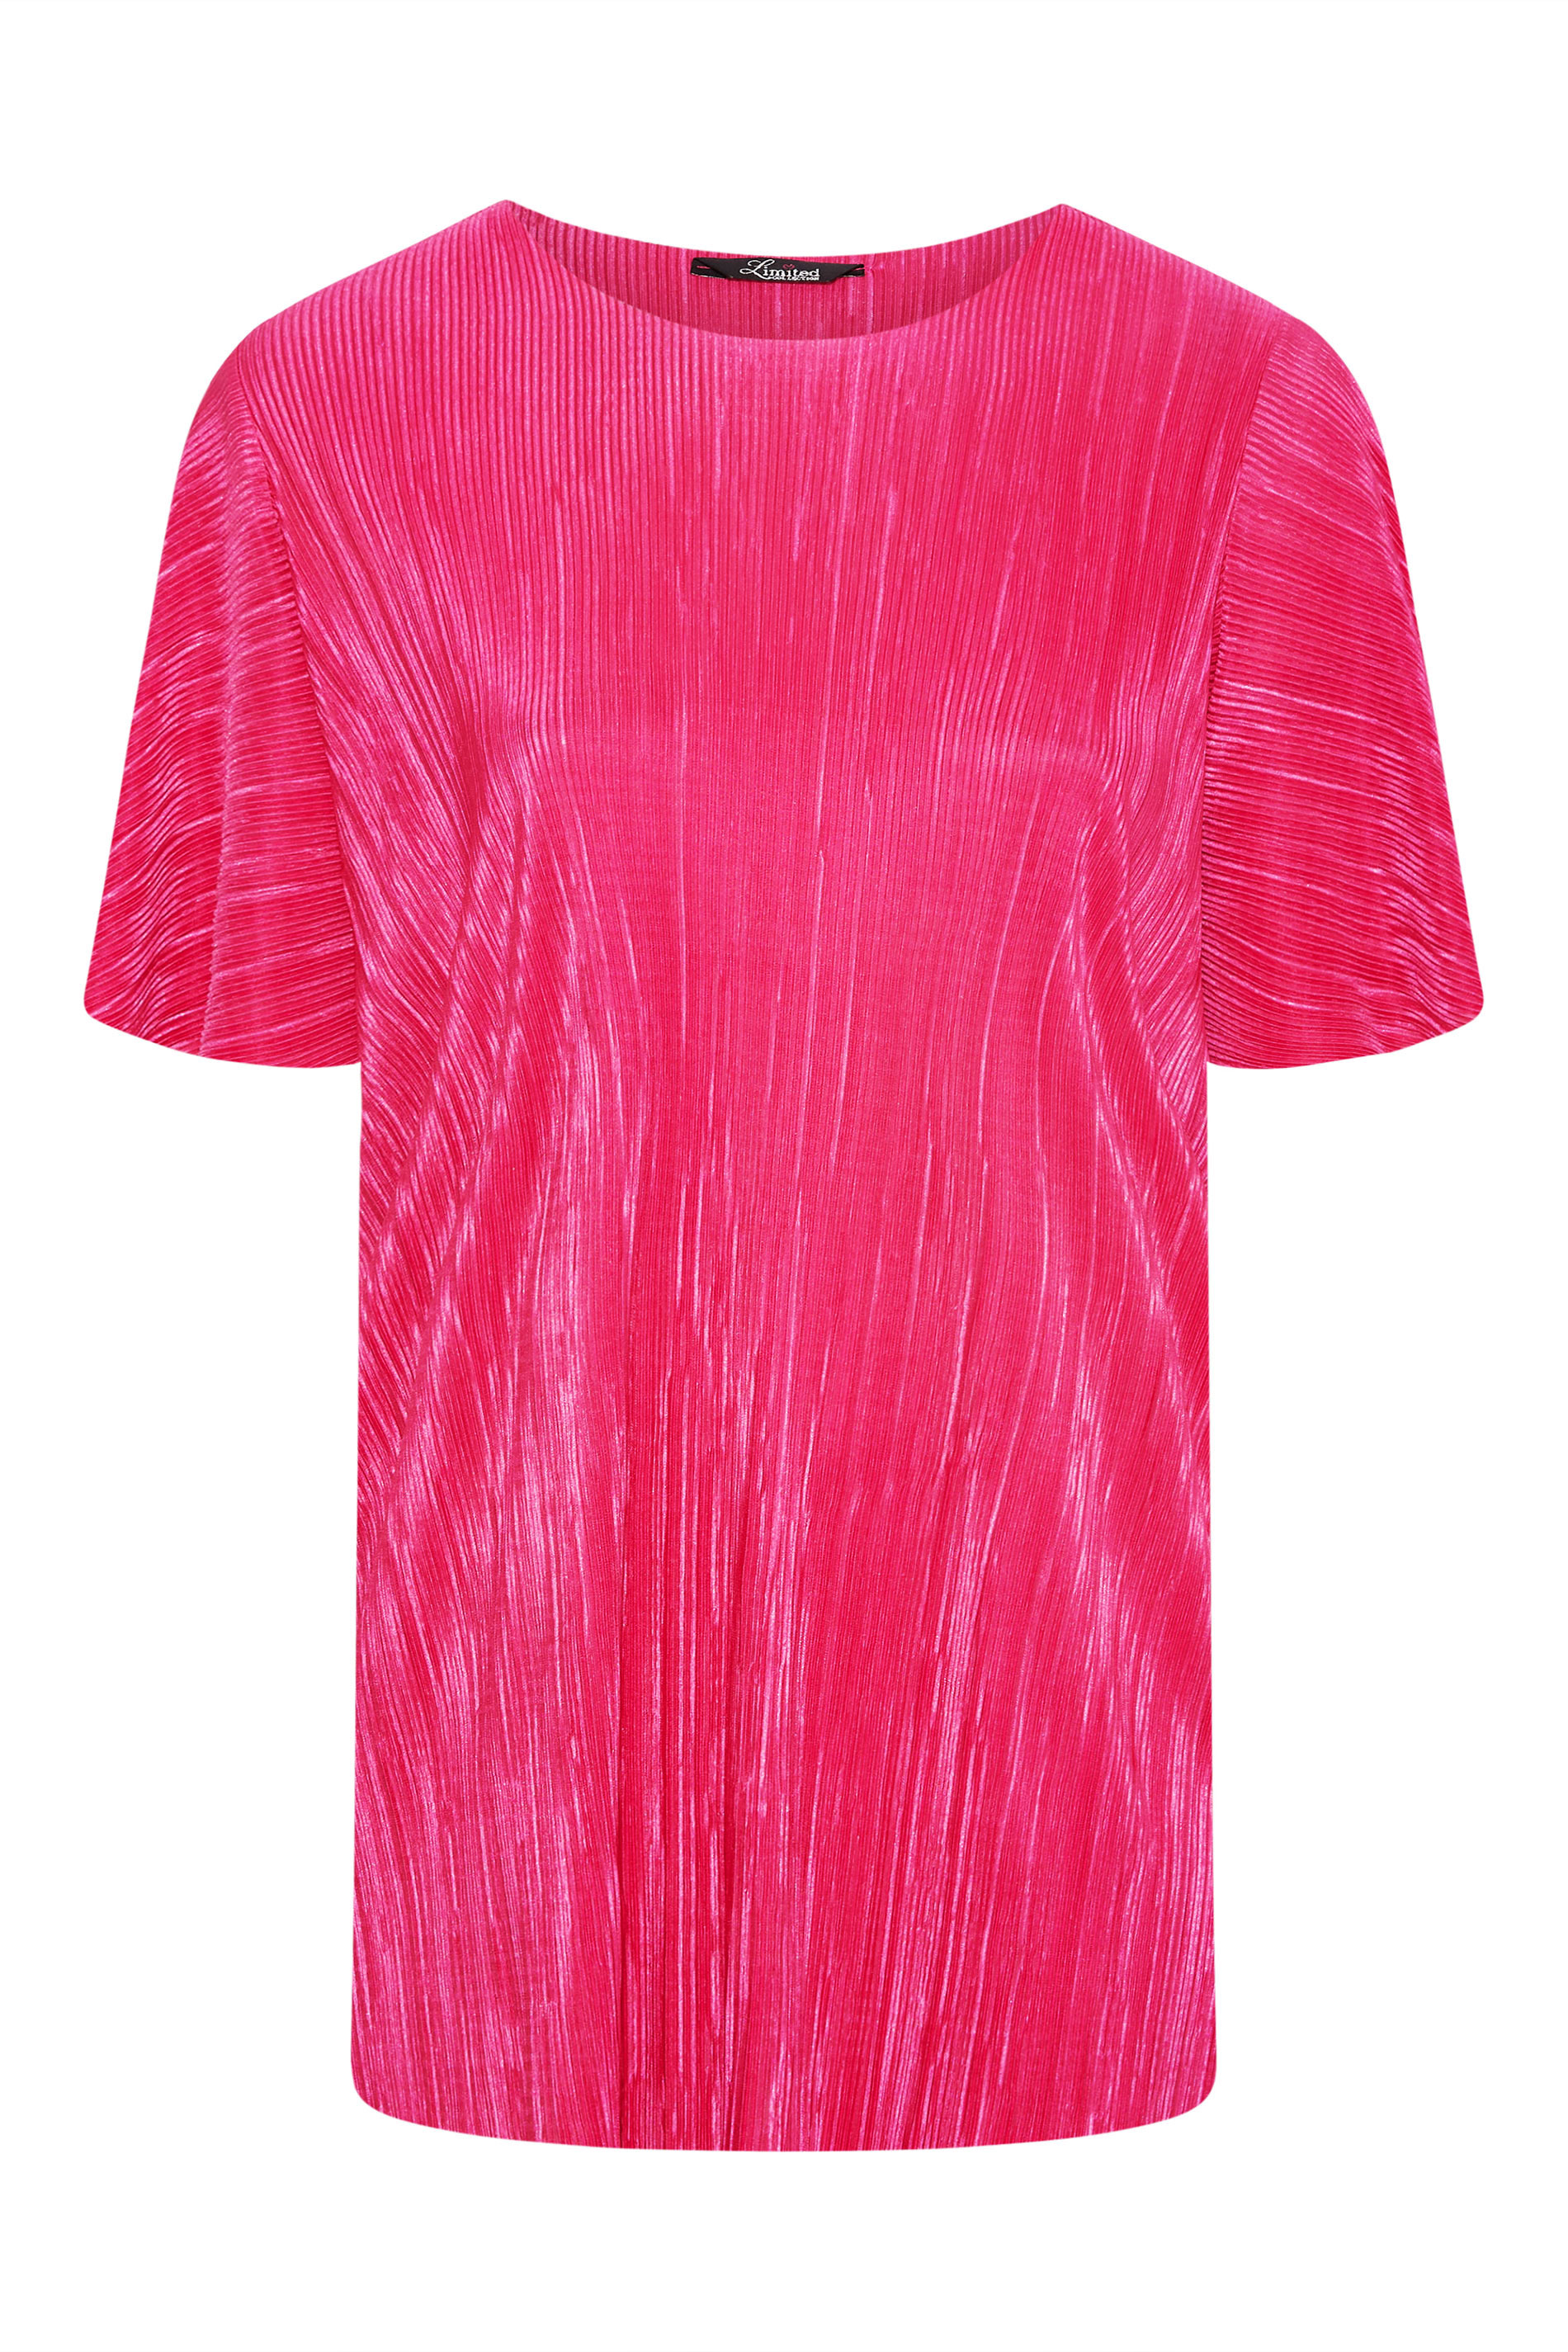 Grande taille  Tops Grande taille  Tops de Soirée | LIMITED COLLECTION - T-Shirt Rose Ample Texture Plissée - OB71025